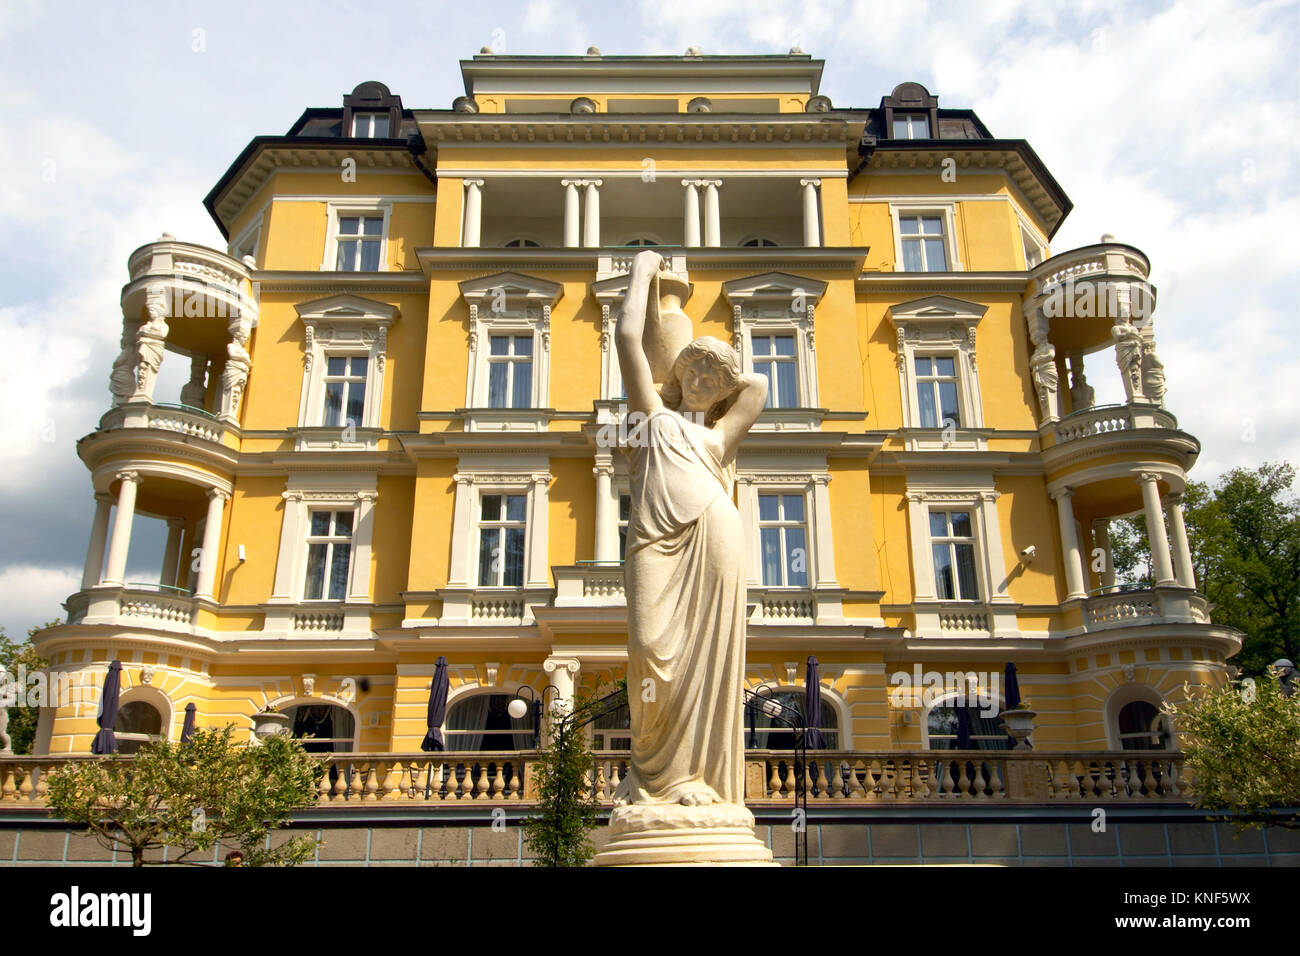 Tschechien, Böhmen : Franzensbad, historische Villa Imperial, erbaut im Neorenaissance-Stil, jetzt Kurhotel Imperial. Hier lernten sich Karl I., letzt Stock Photo